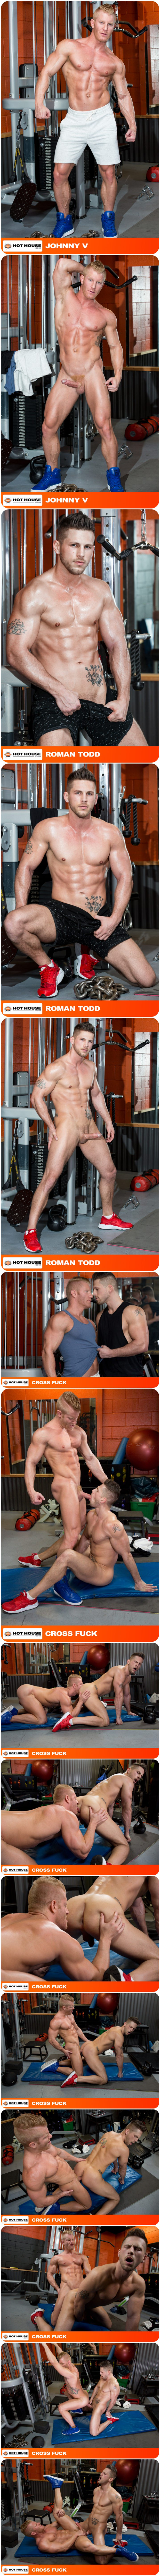 Hot House, Roman Todd, Johnny V